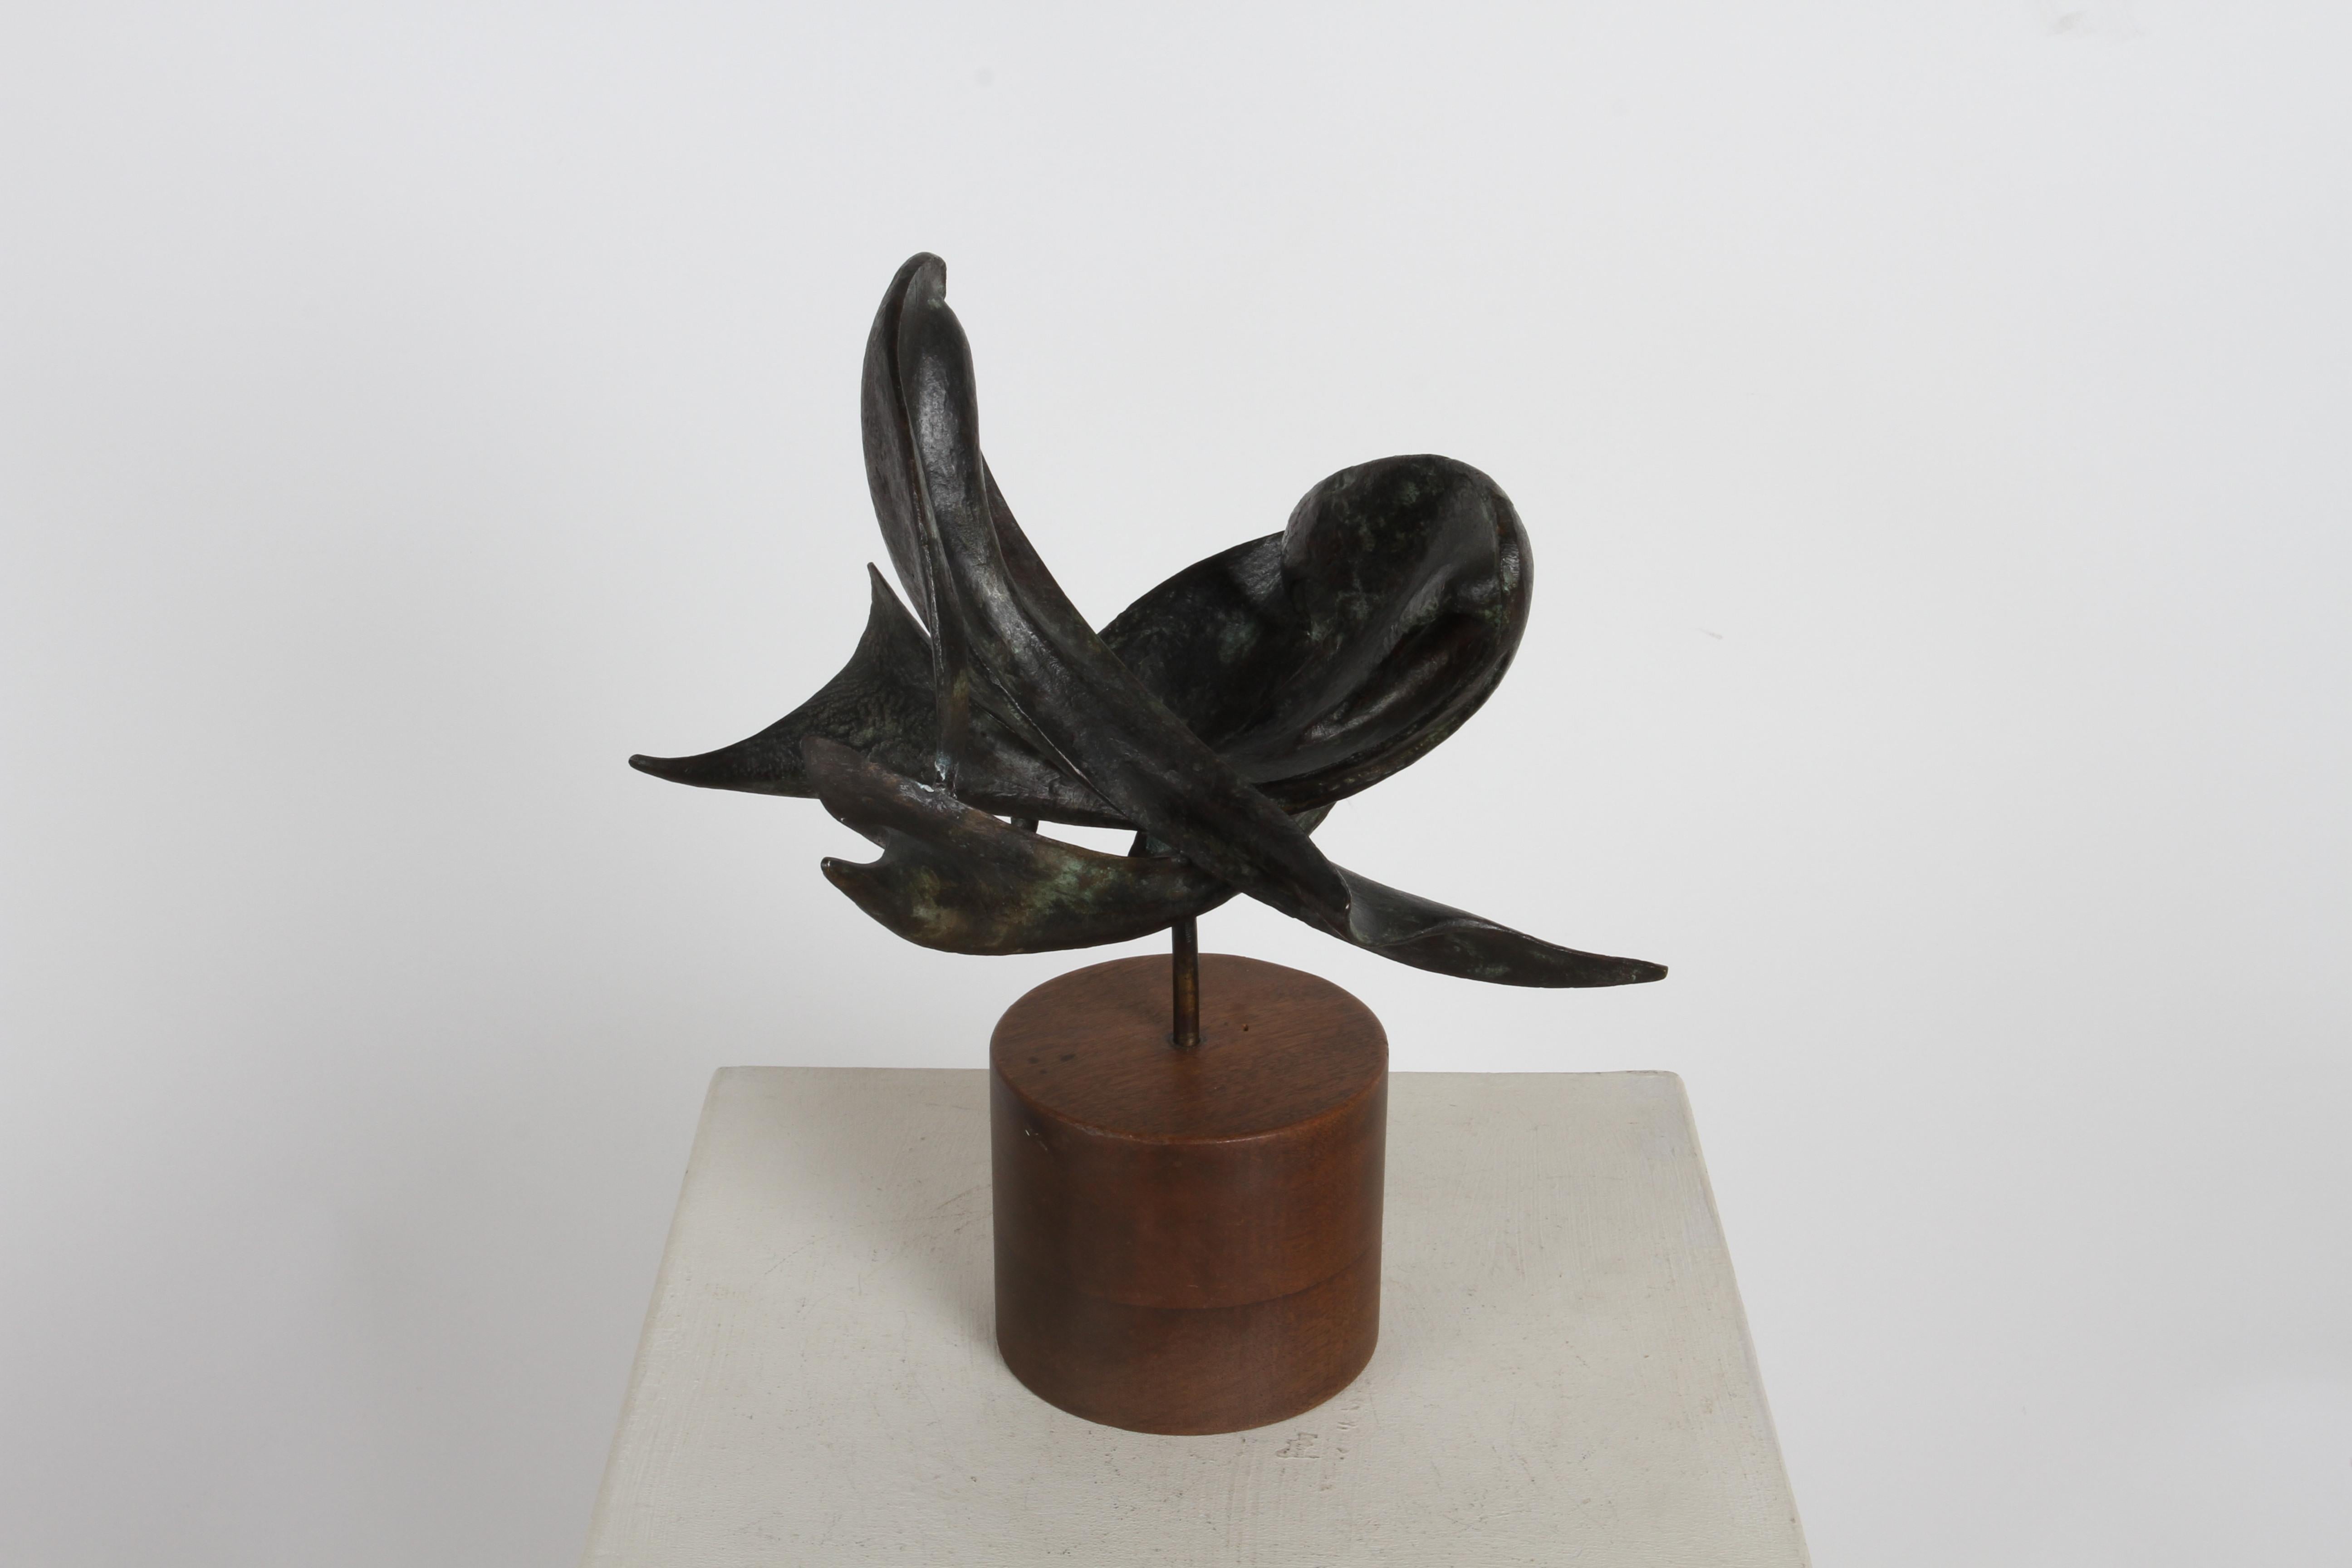 Ramiz Barquet 1920-2010 (Mexicain) Cétacés (baleines) circa 1978 en bronze sur base cylindrique en bois. L'artiste Ramiz Barquet, de Puerto Vallarta, a capturé trois baleines abstraites nageant ou dansant dans cette sculpture unique. Elle est